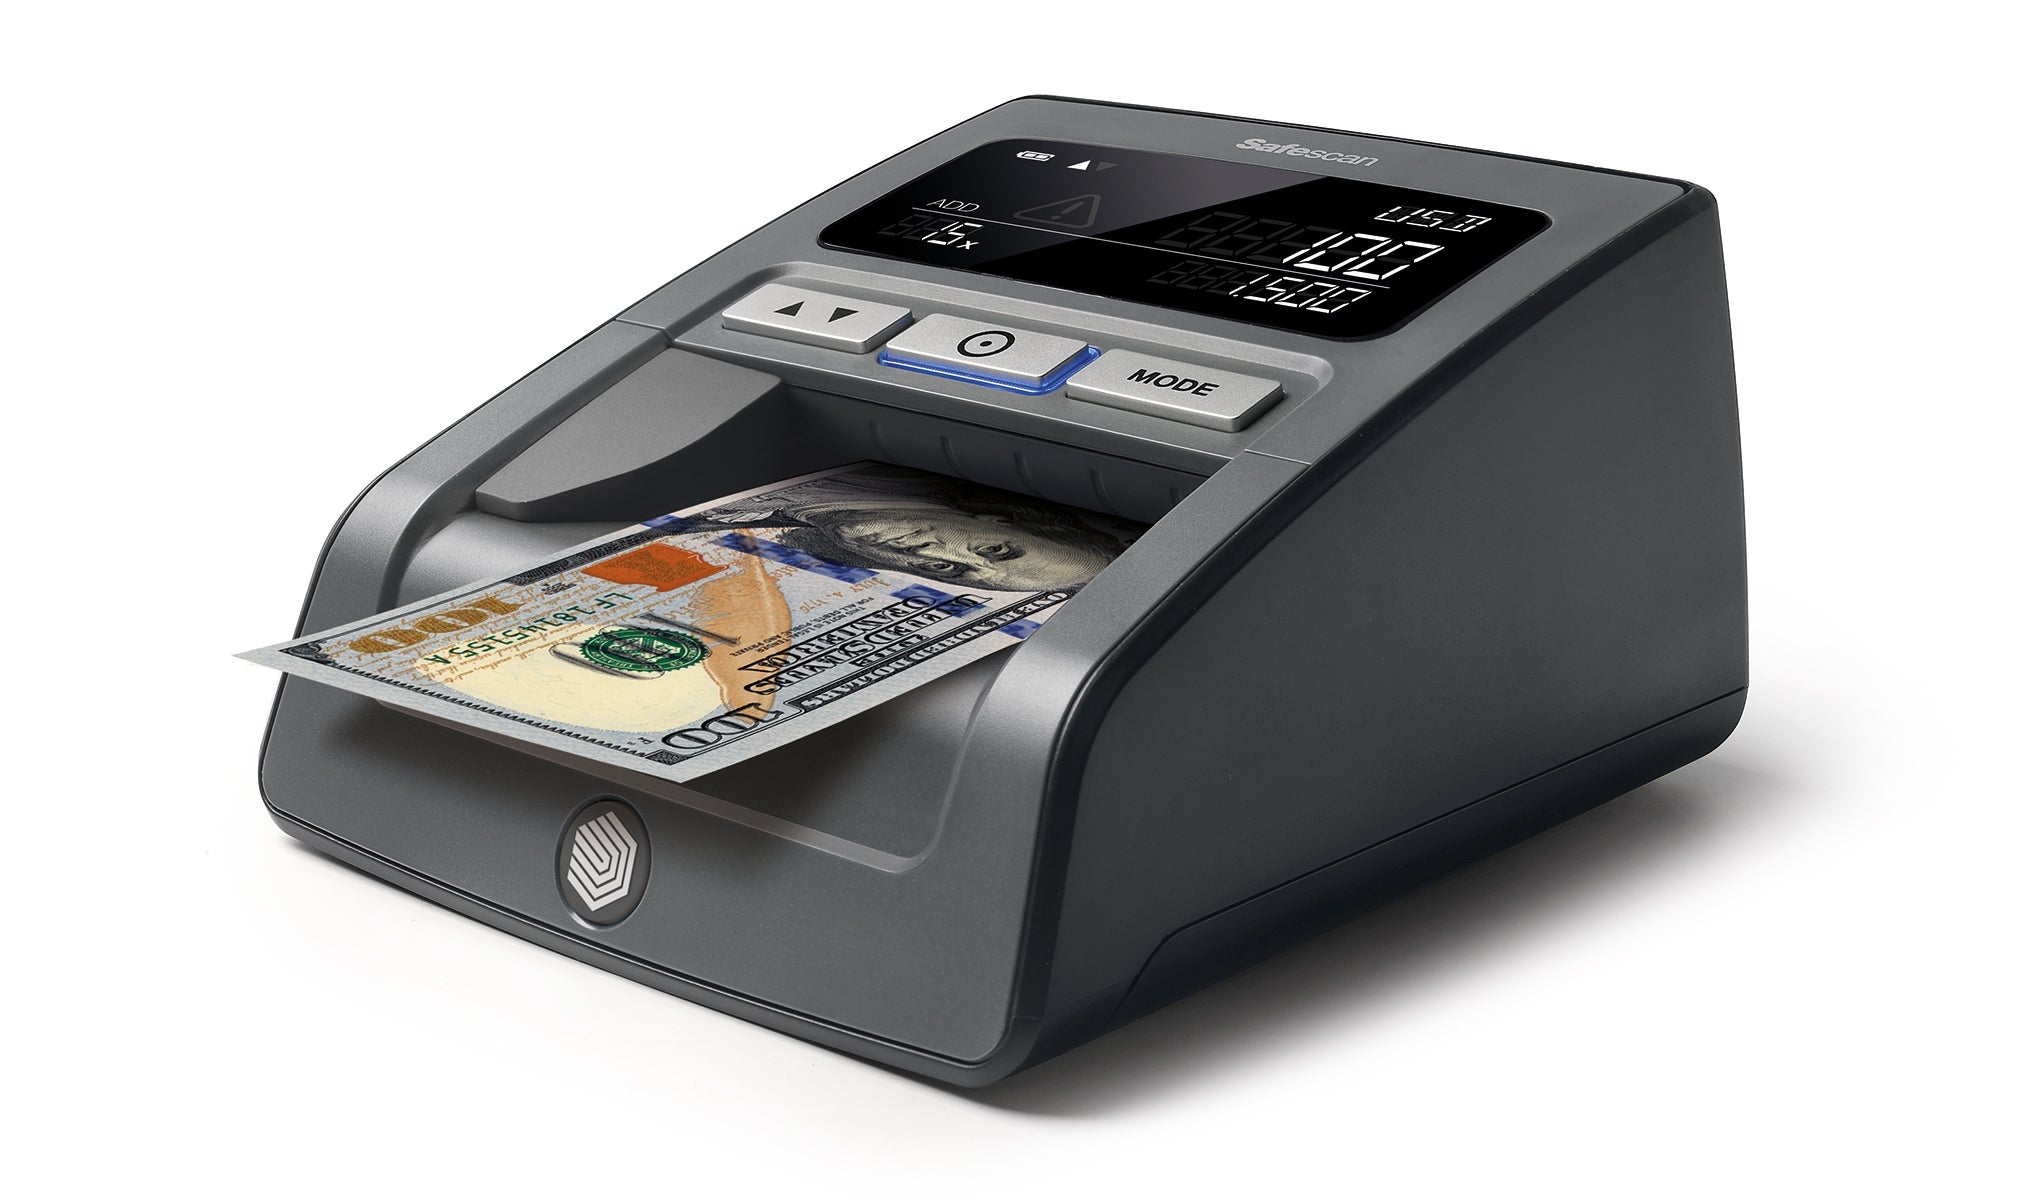 Verifica banconote automatico - Safescan 185-S - Ordina ora